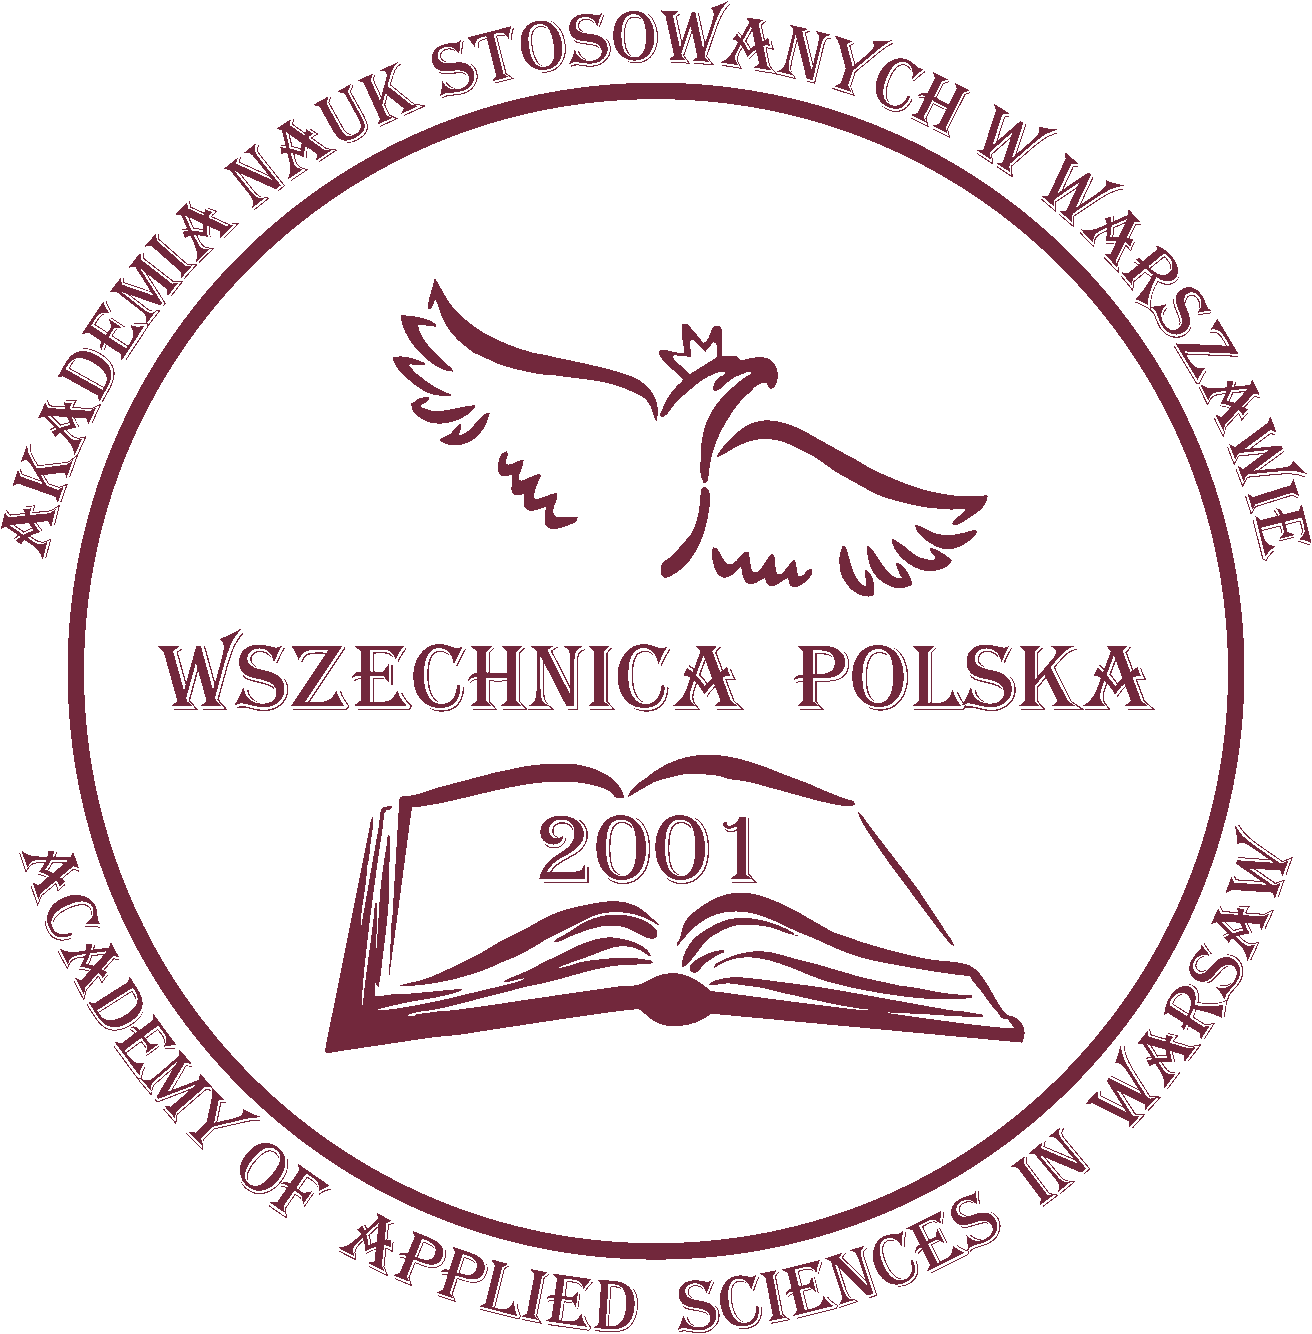 Wszechnica Polska Akademia Nauk Stosowanych w Warszawie logo